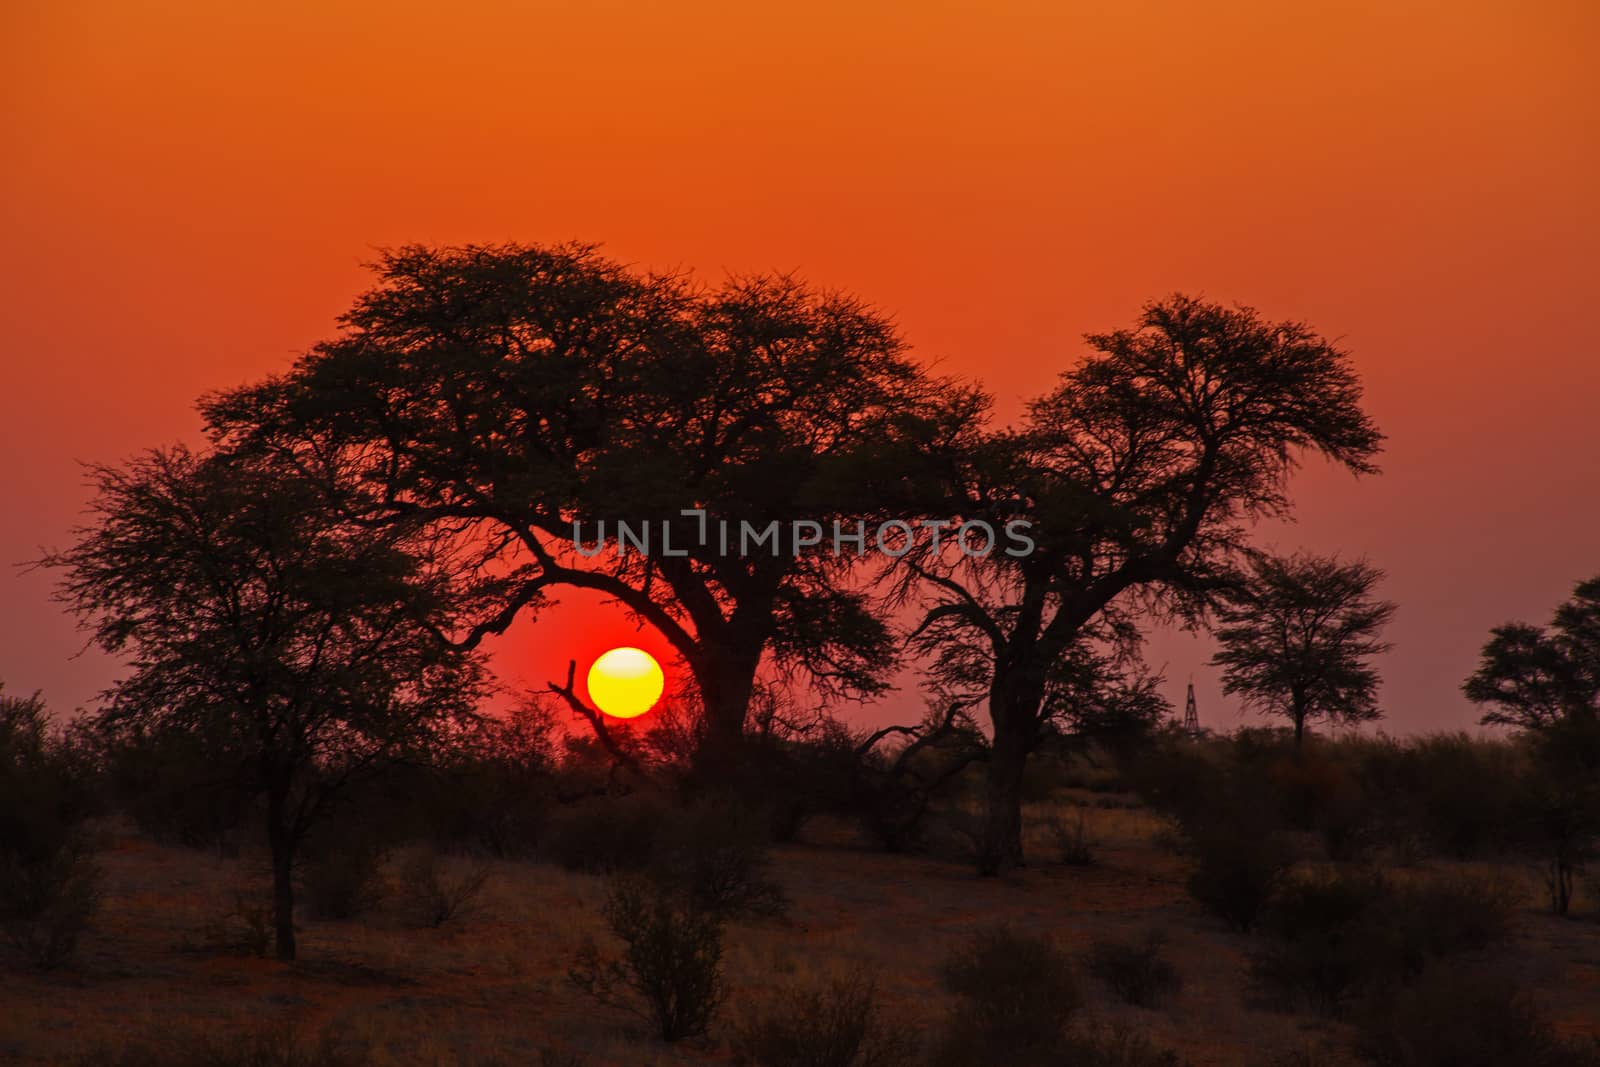 Kalahari Sunset. by kobus_peche